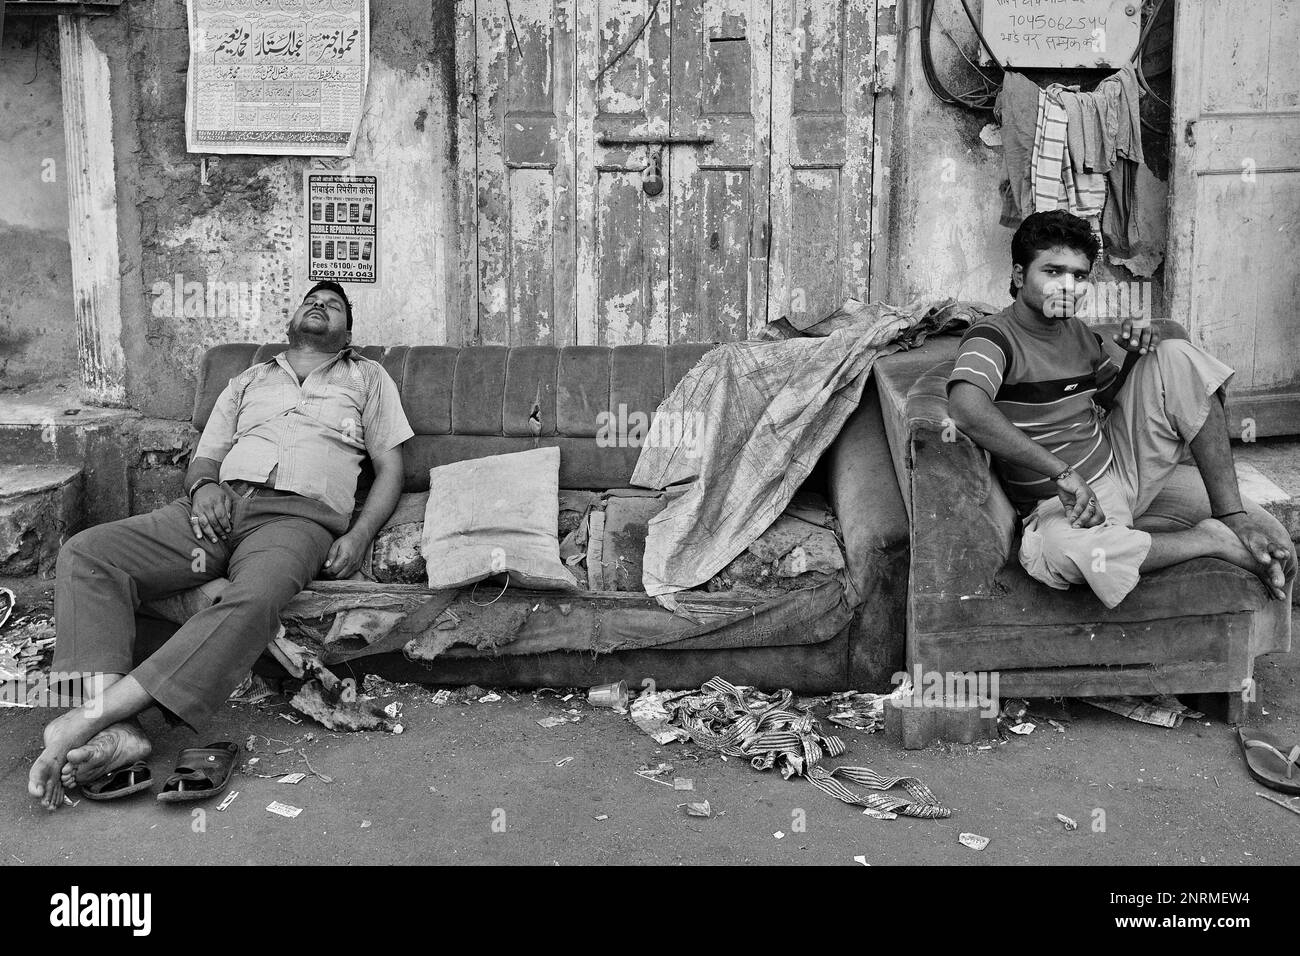 Un Indien dormant sur un canapé abandonné et délabré, un autre homme assis sur un fauteuil à la junte ; à l'extérieur dans Arab Galli, Grant Rd., Mumbai, Inde Banque D'Images